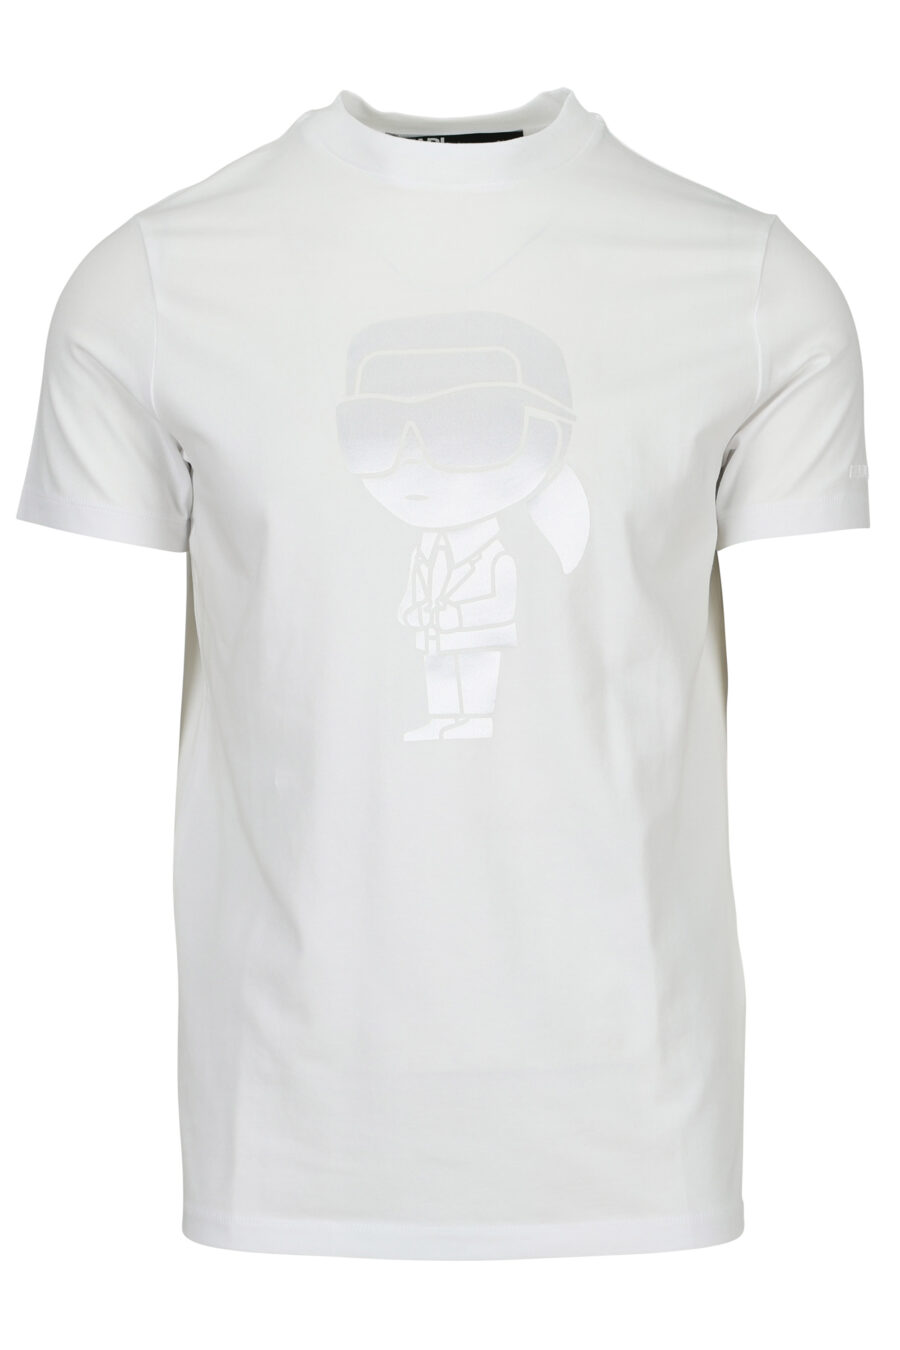 Camiseta blanca con maxilogo "karl" monocromático - 4062226788564